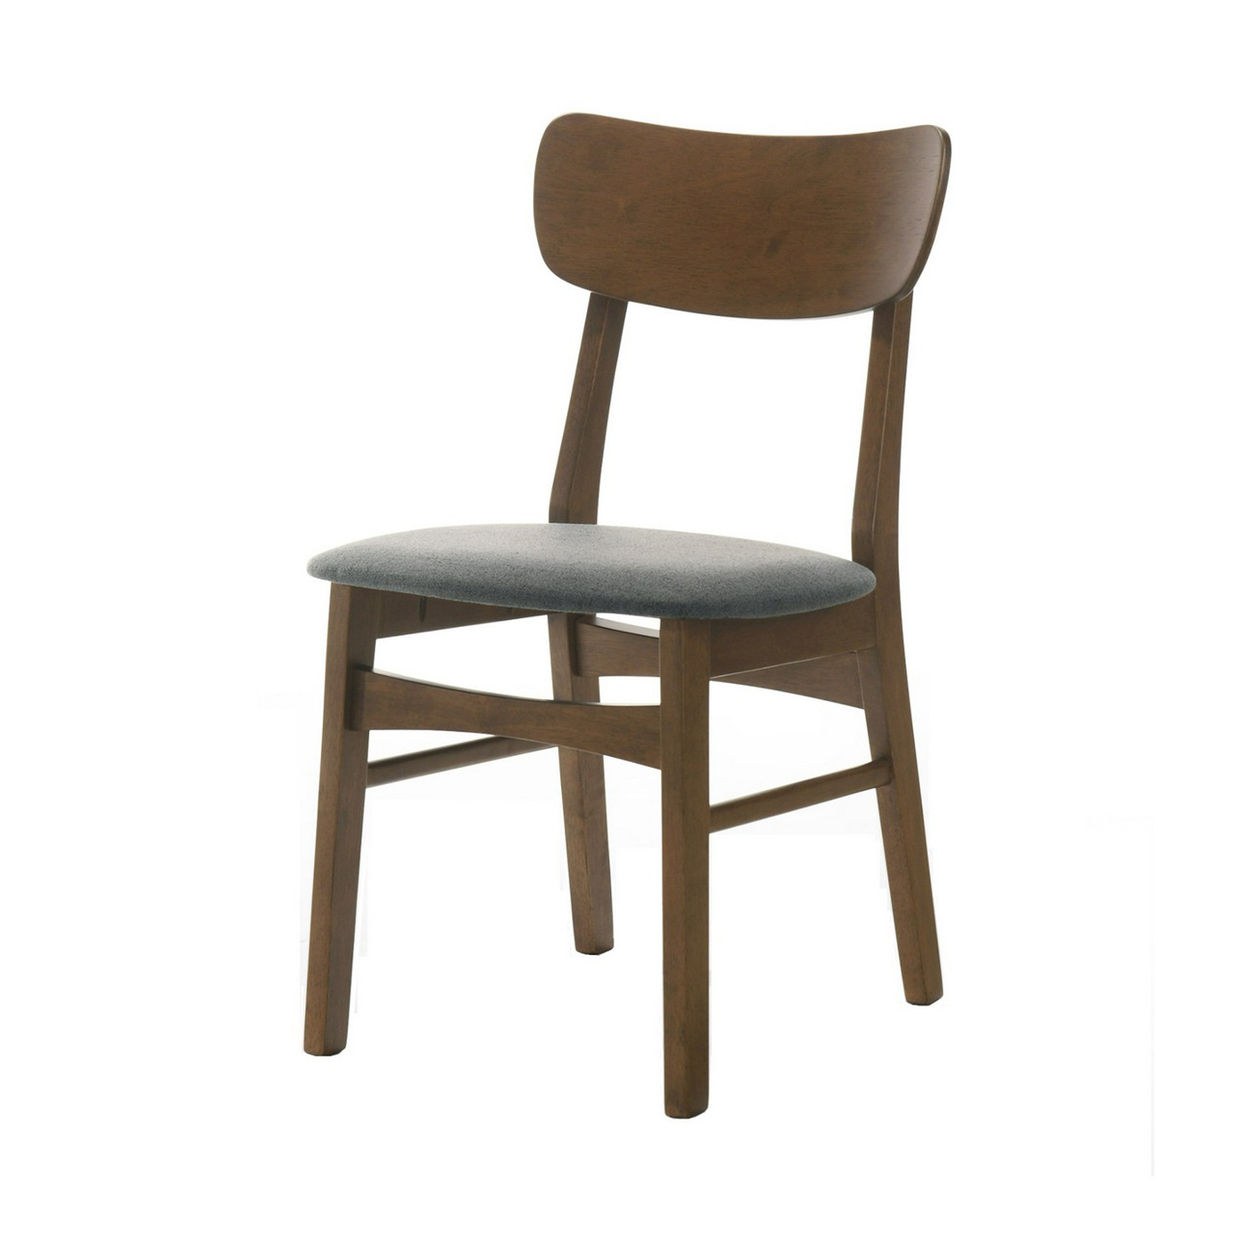 Cid Cyla 18 Inch Dining Chair, Set Of 2, Walnut Wood Frame, Cushioned Seat- Saltoro Sherpi